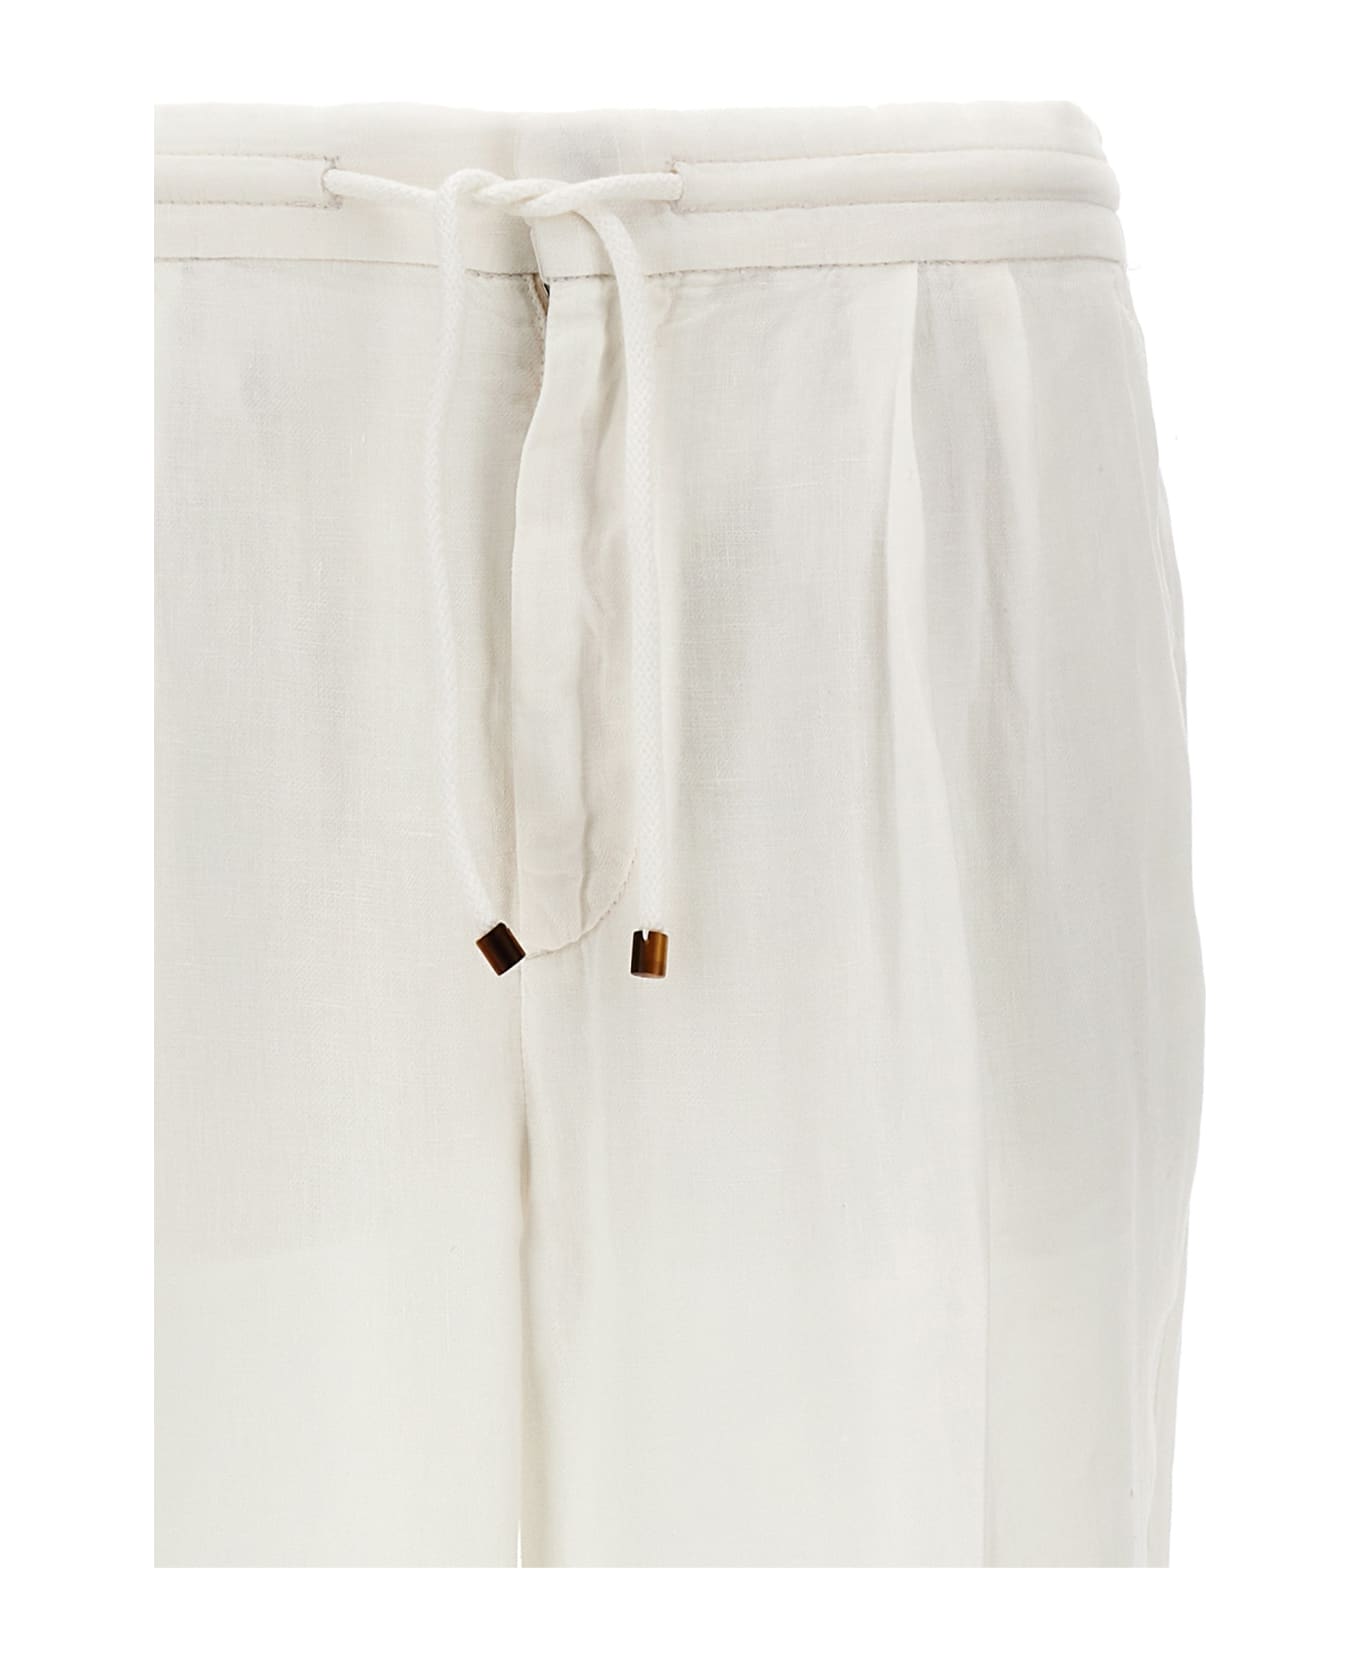 Brunello Cucinelli Linen Pin Tuck Trousers - White